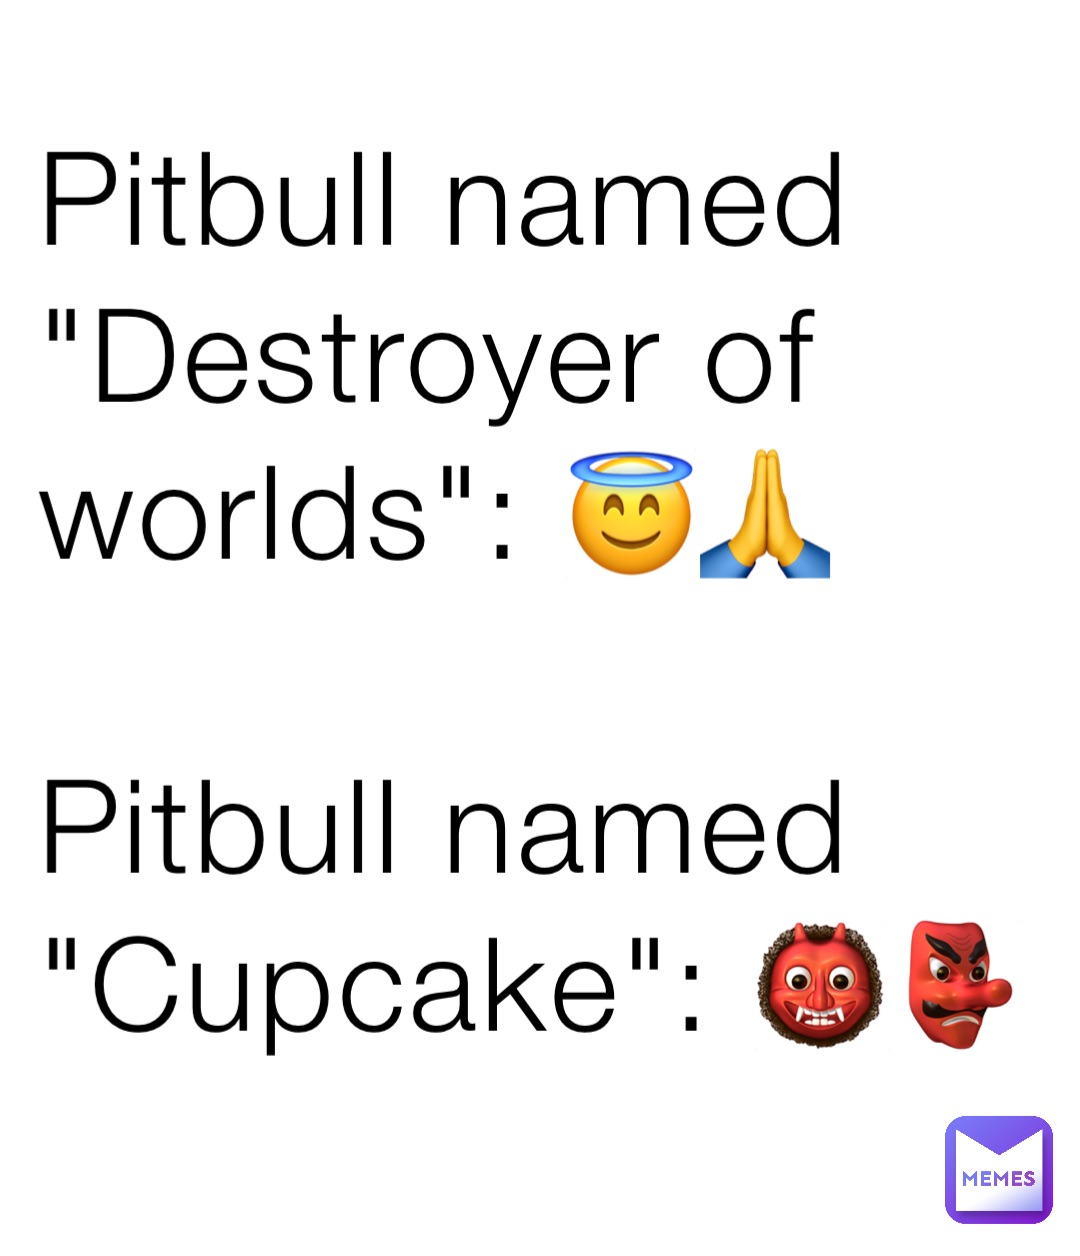 Pitbull named "Destroyer of worlds": 😇🙏

Pitbull named "Cupcake": 👹👺